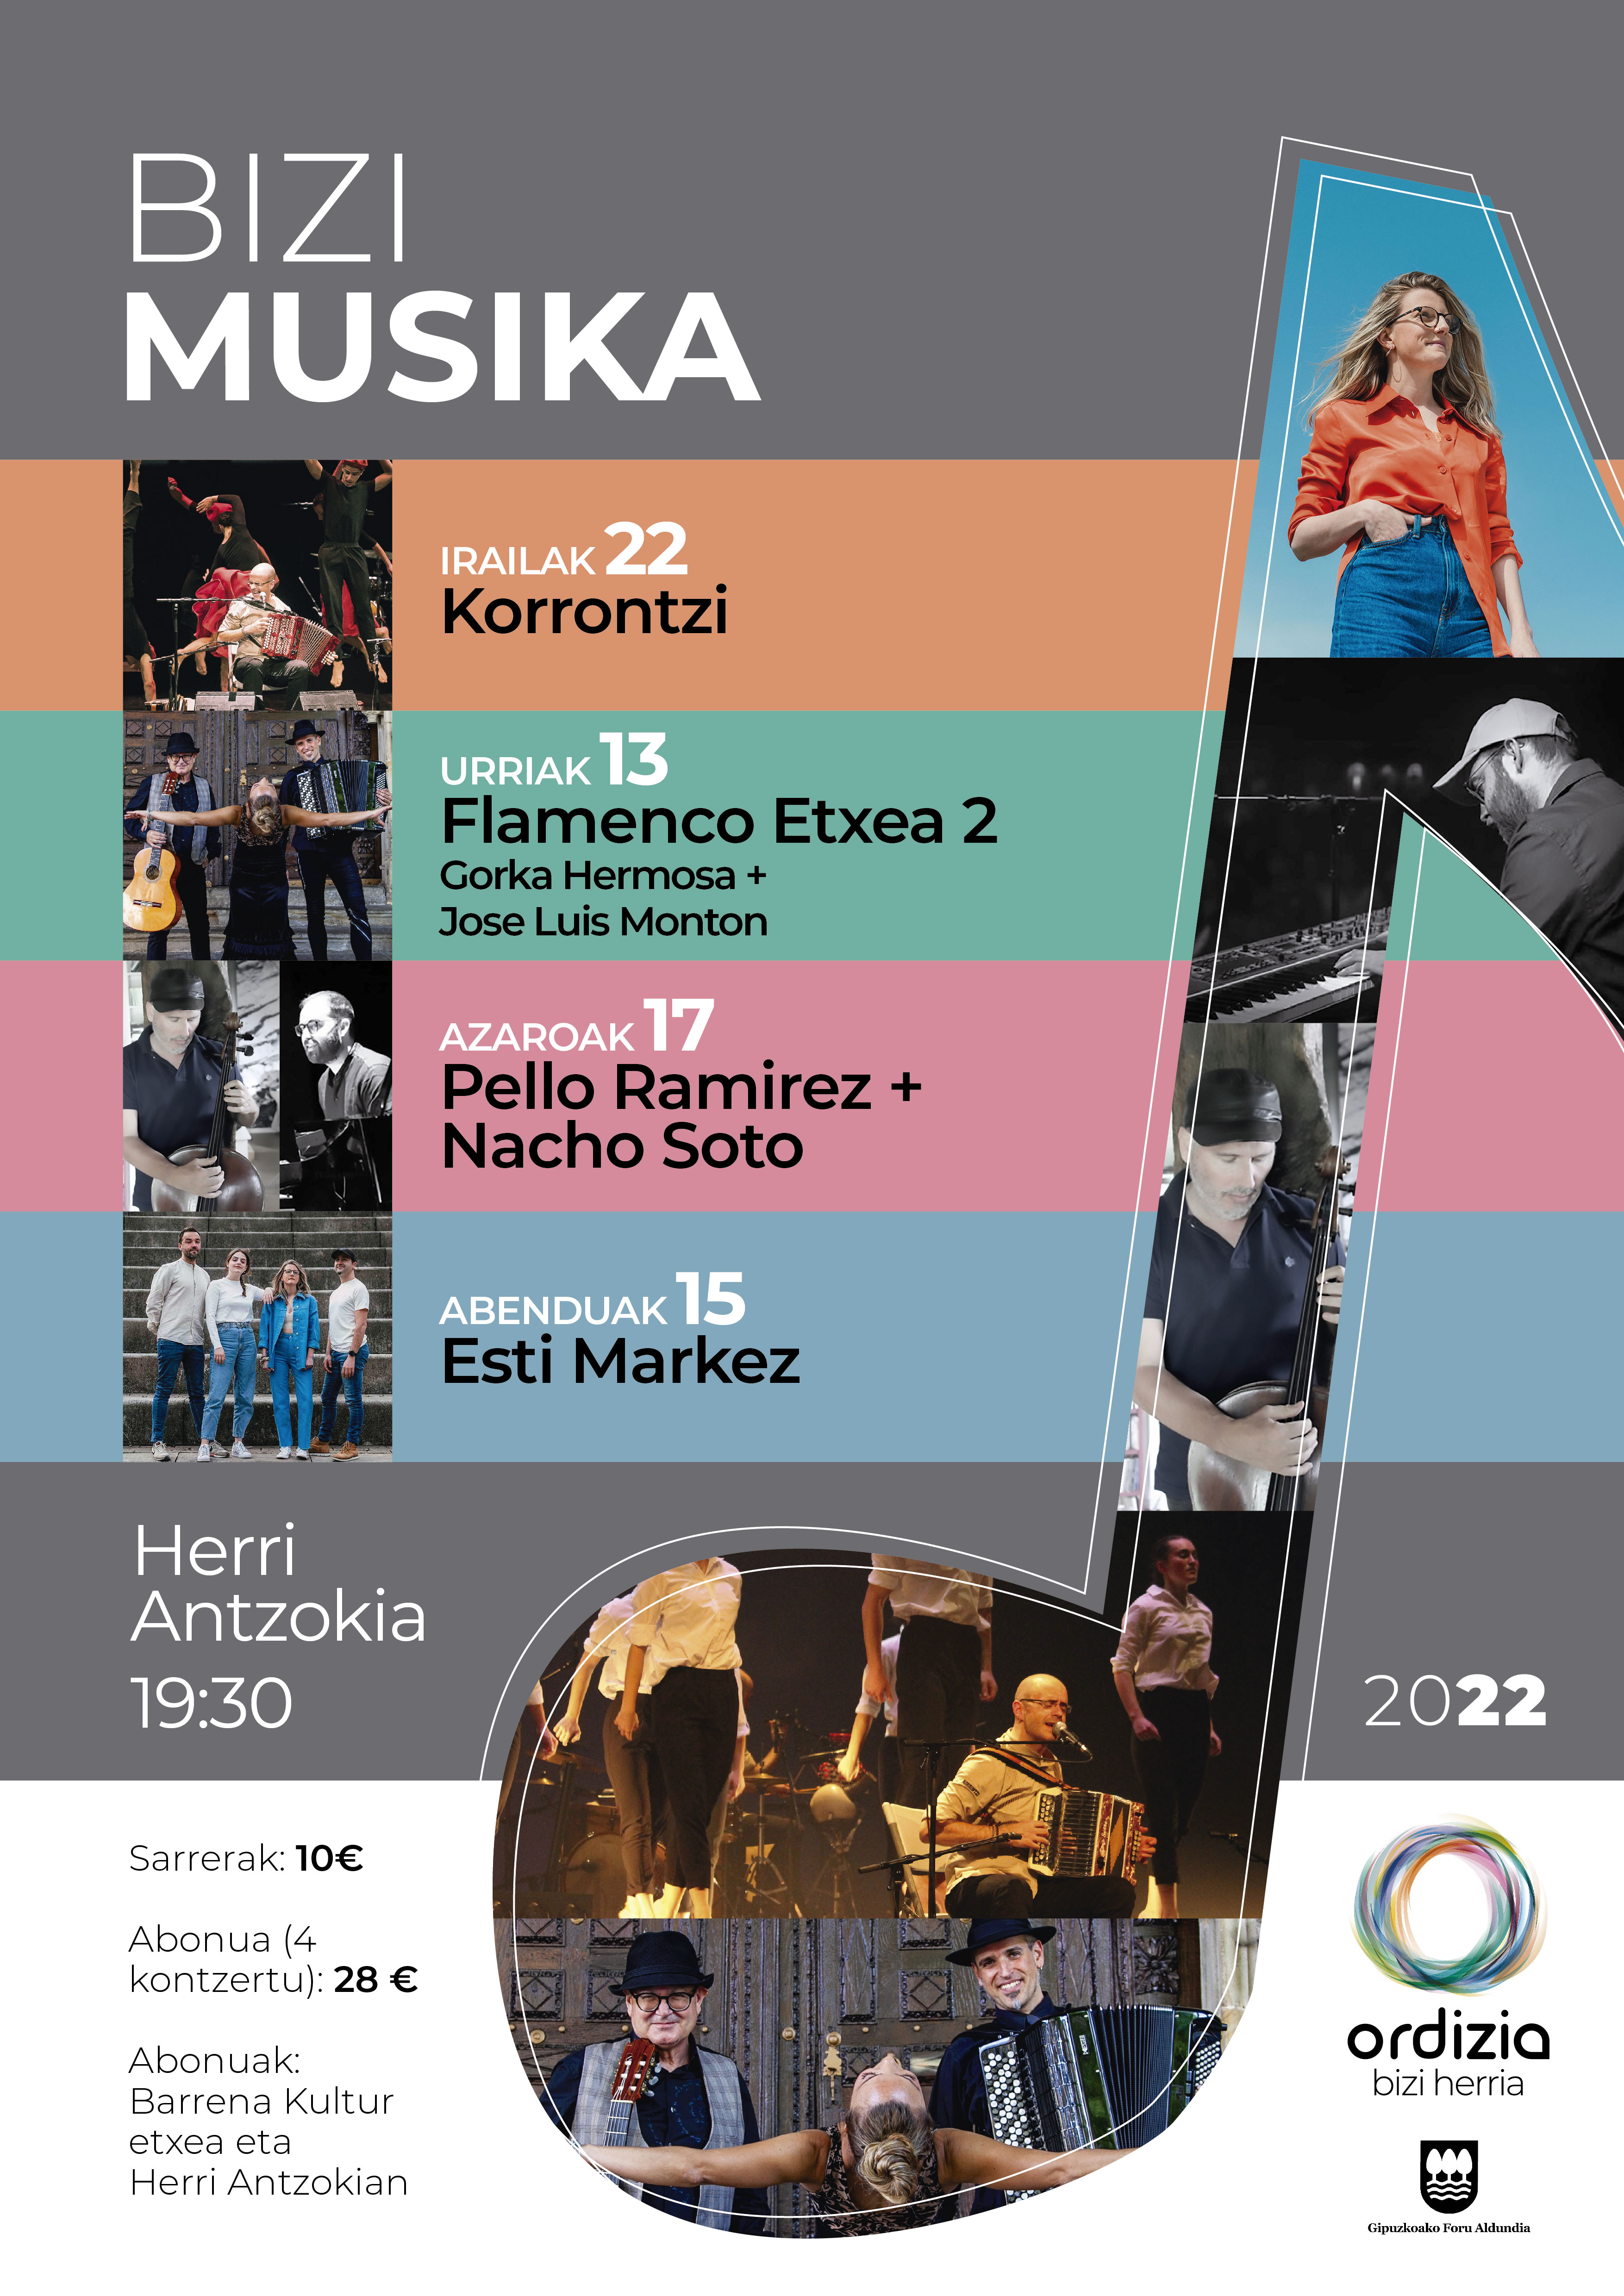 Este jueves comienza el ciclo Bizi Musika